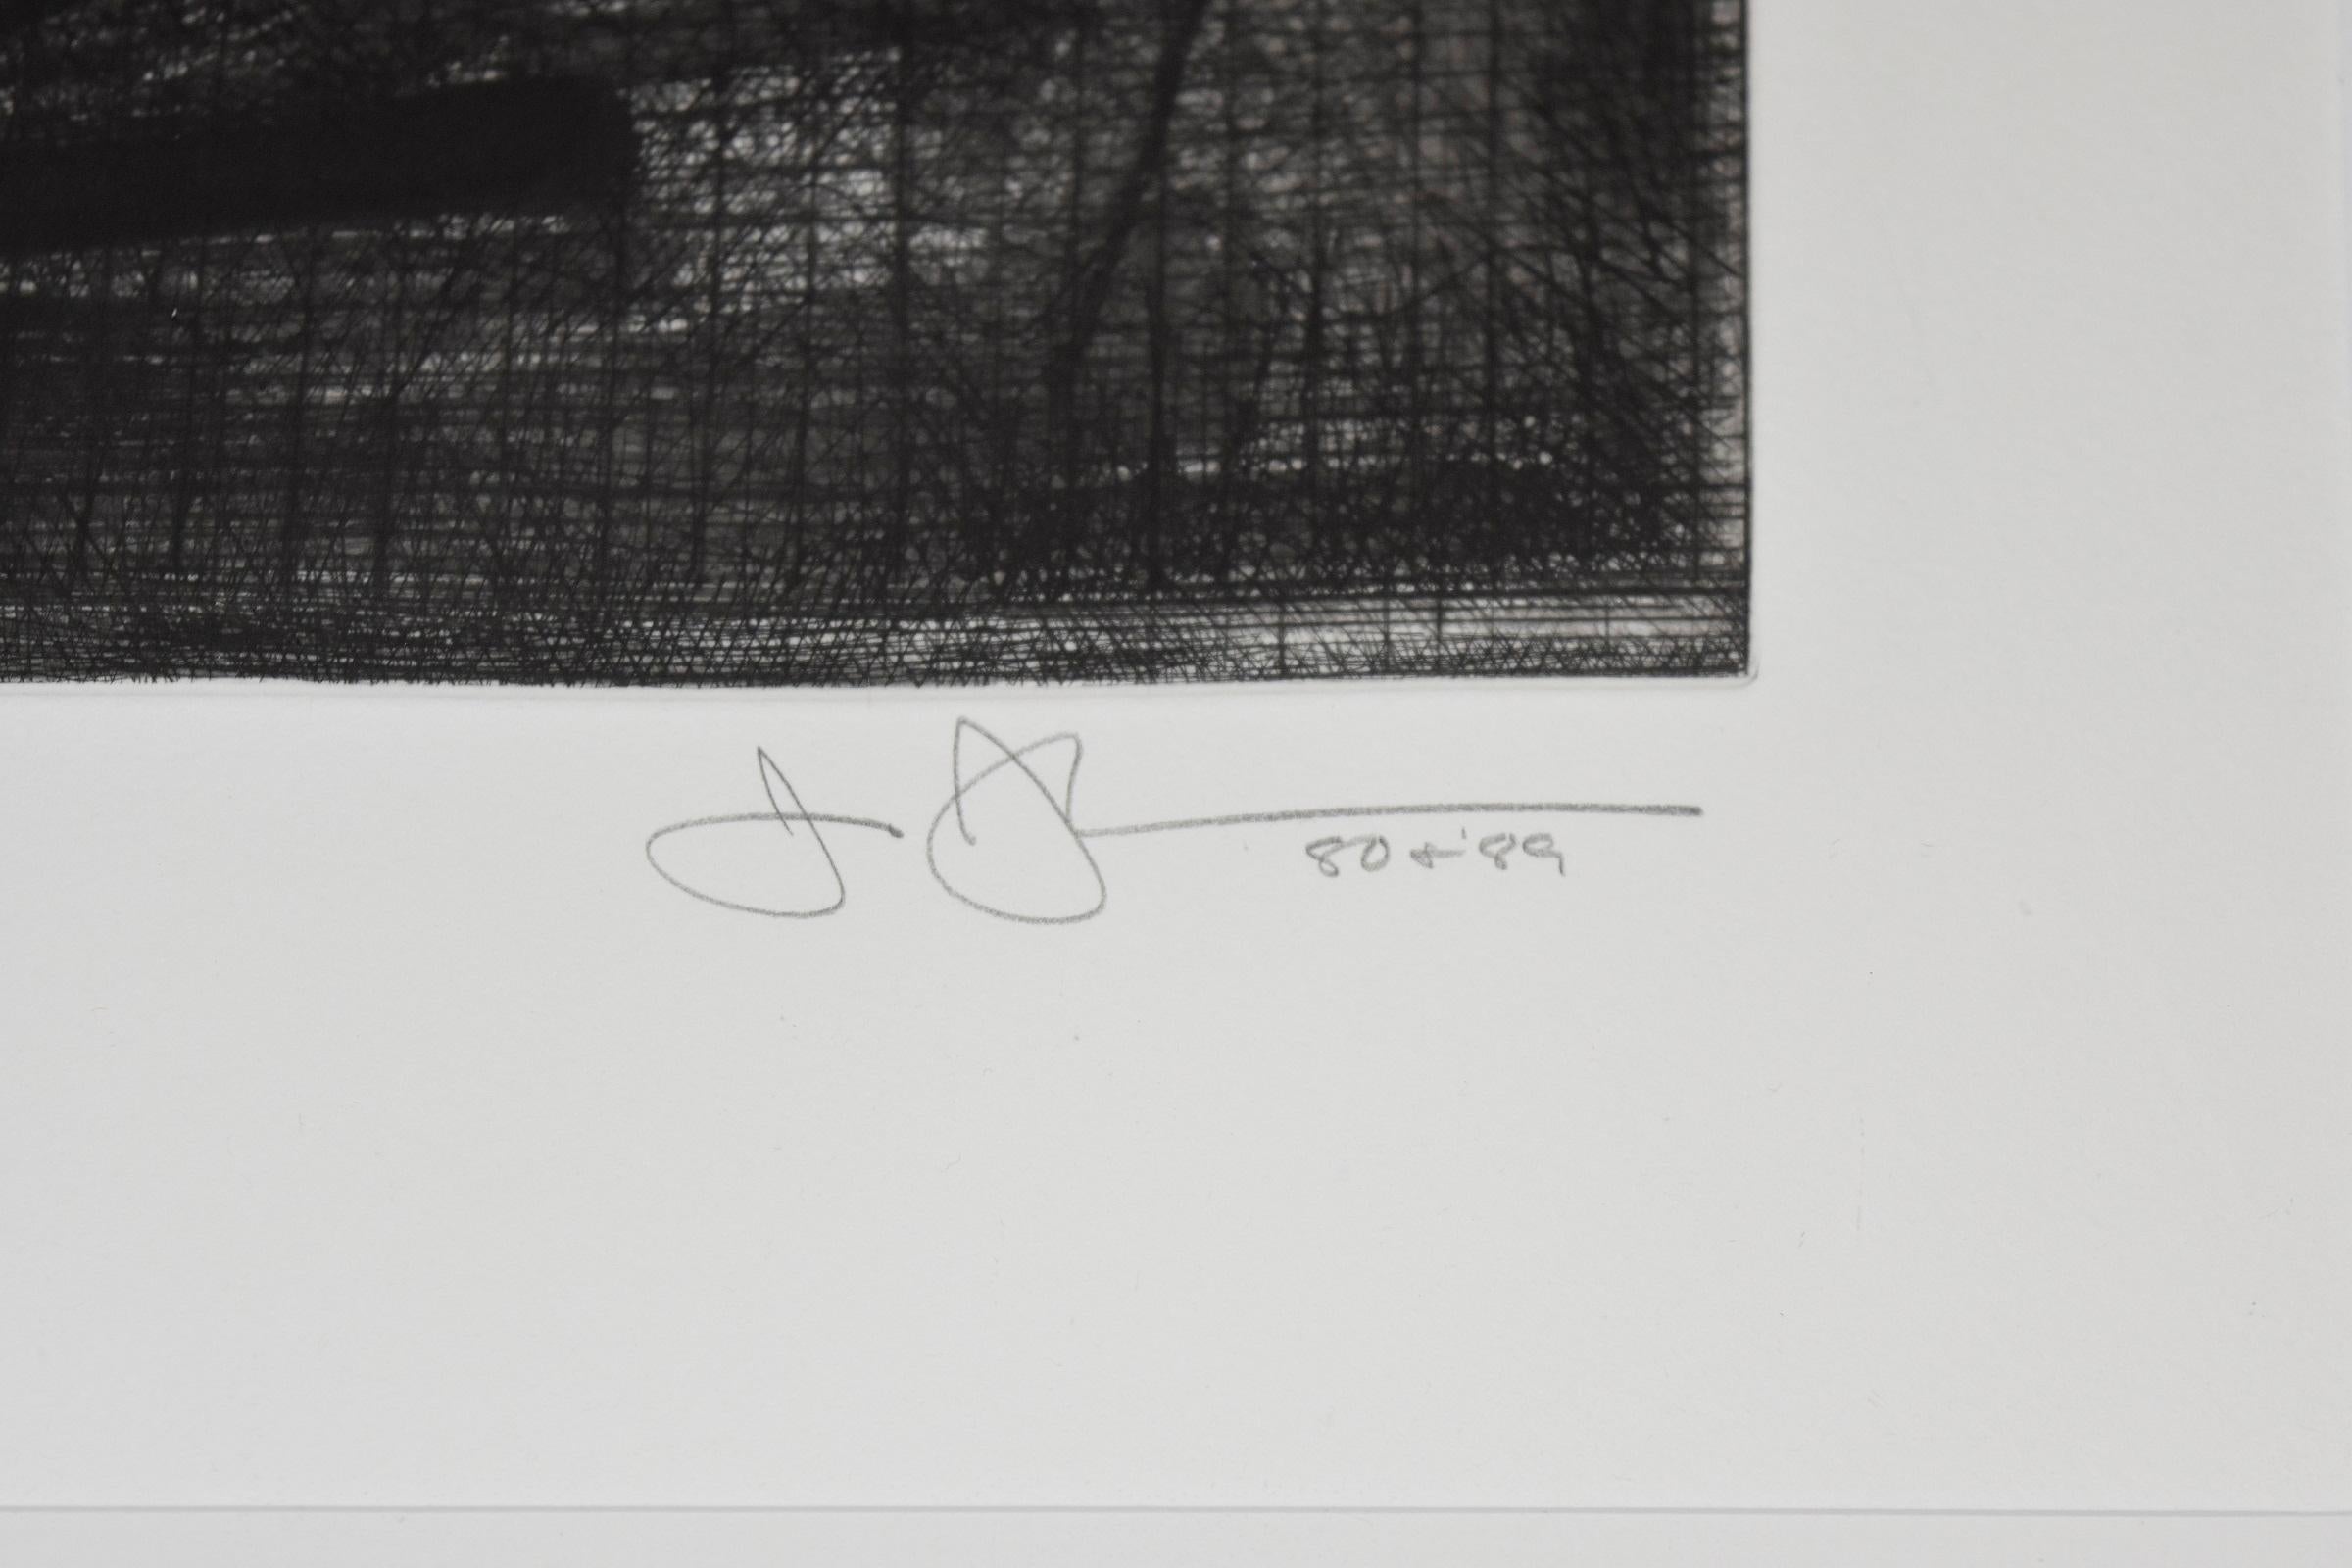 Künstler:  Jasper Johns 
Titel:  Zielscheibe mit Gipsabdruck Schwarz und Weiß
Medium:  Kaltnadelradierung, Radierung, Aquatinta
Auflage:  AP IV/XVI
Datum:  1990
Abmessungen:  23 1/2 x 17 7/8
Beschreibung:  Signiert, datiert '80 & '89 und nummeriert